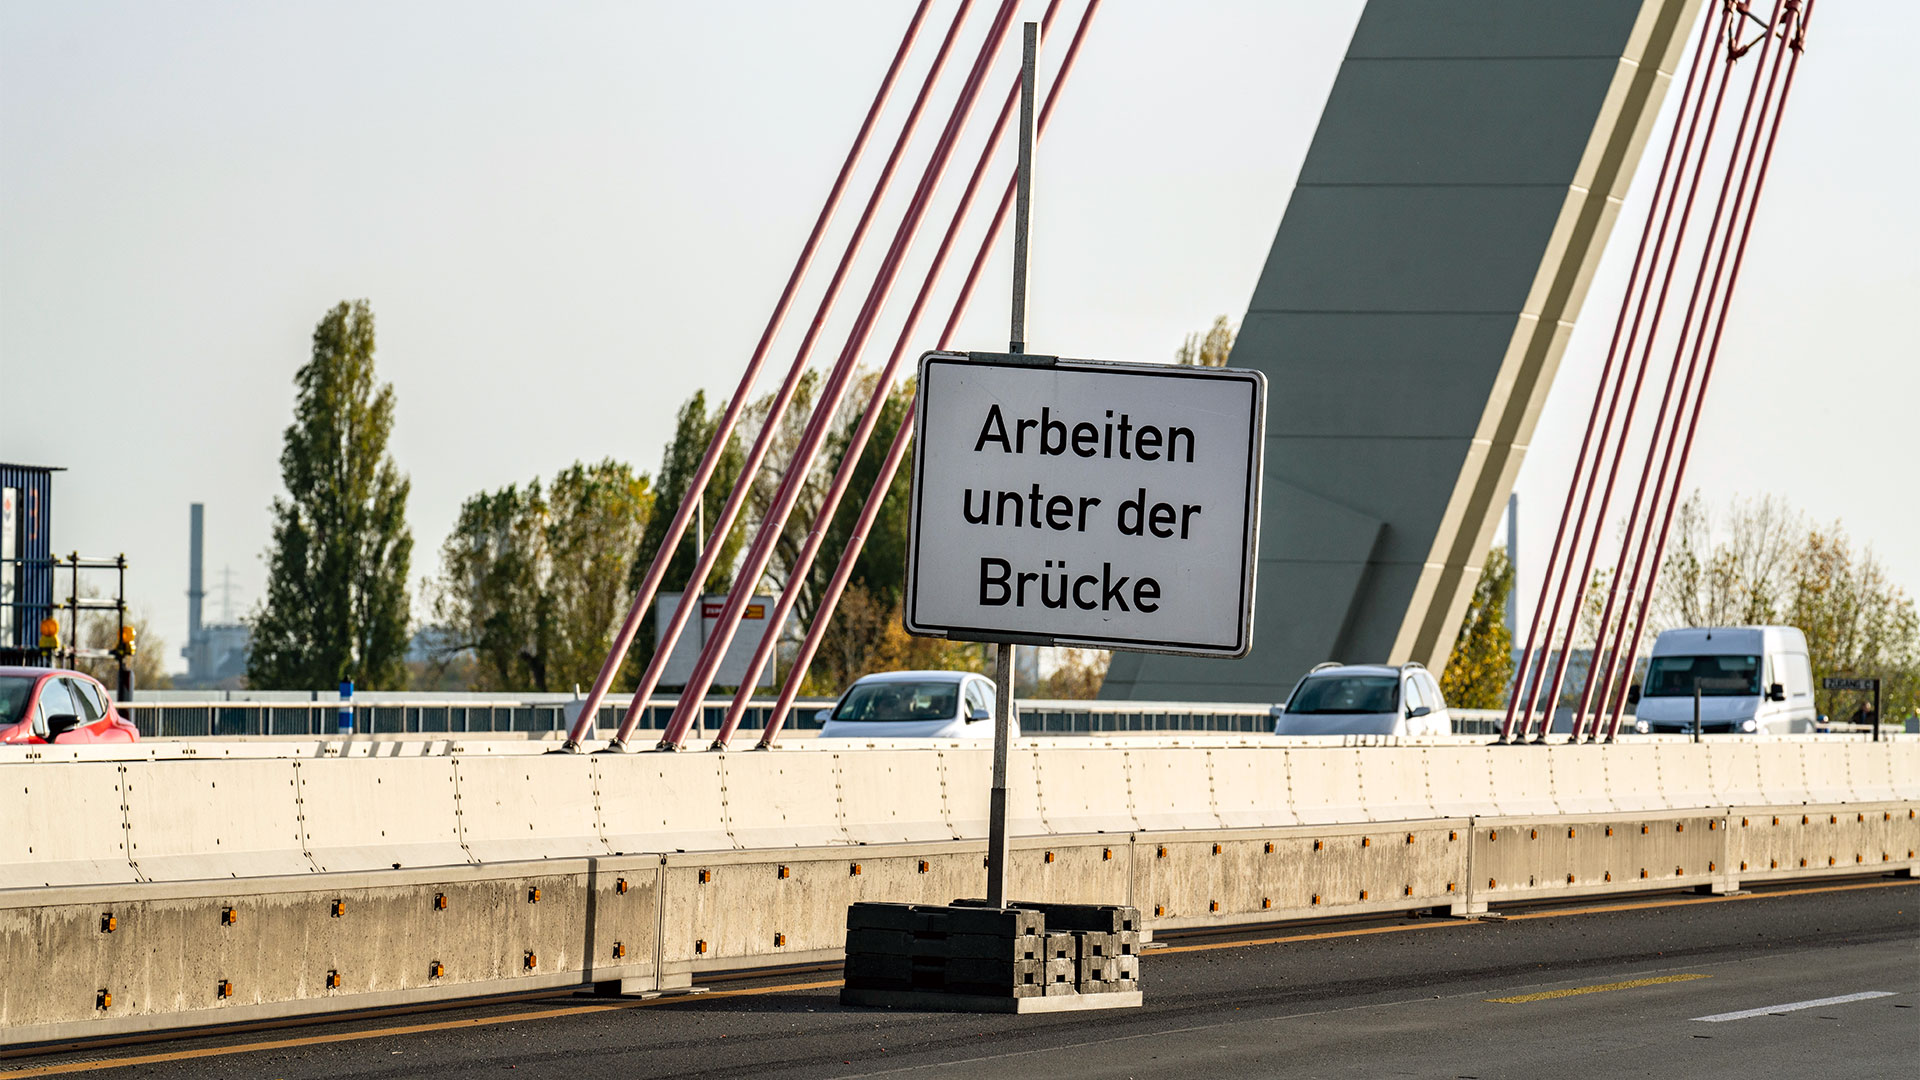 Sanierungsarbeiten, Fleher Brücke, A46 | picture alliance / Jochen Tack